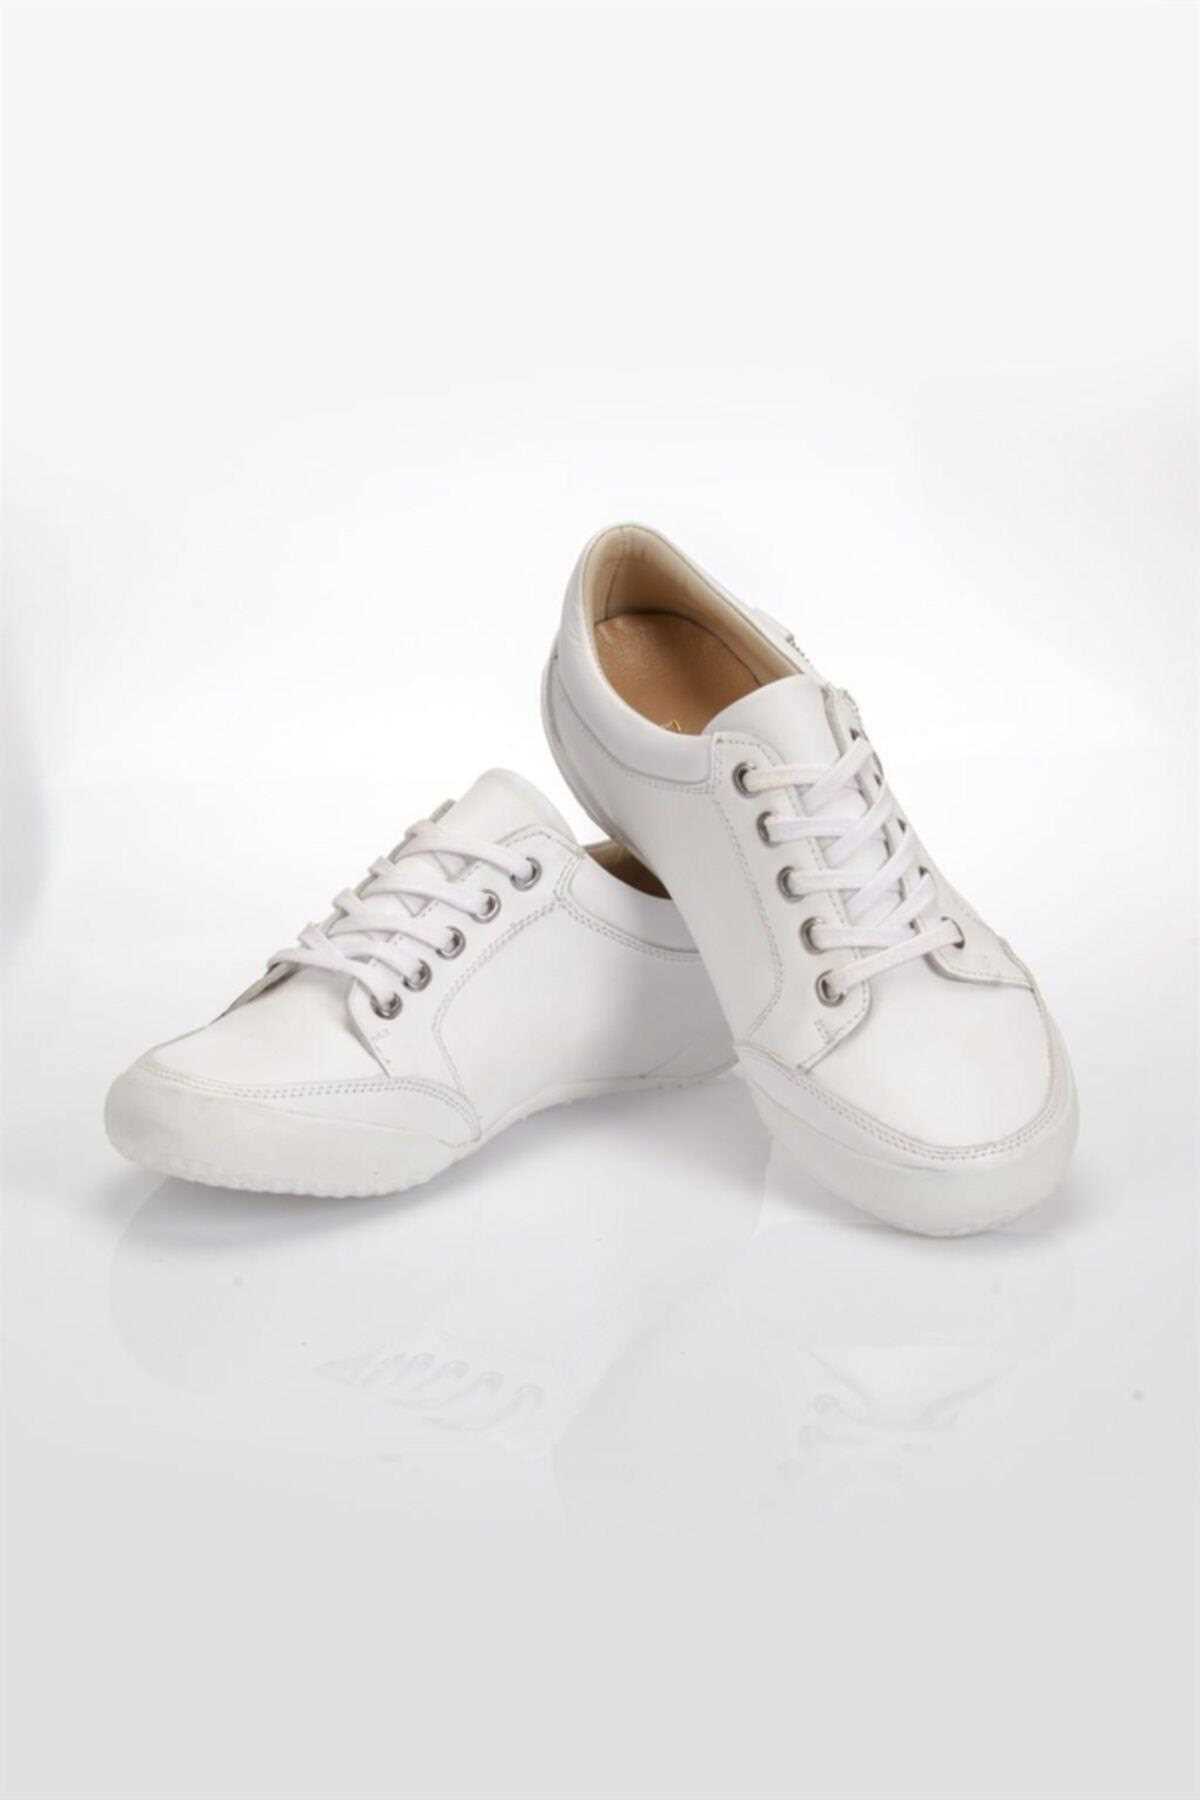 خرید پستی کفش روزمره زنانه شیک شیک Deripabuc رنگ سفید ty457706